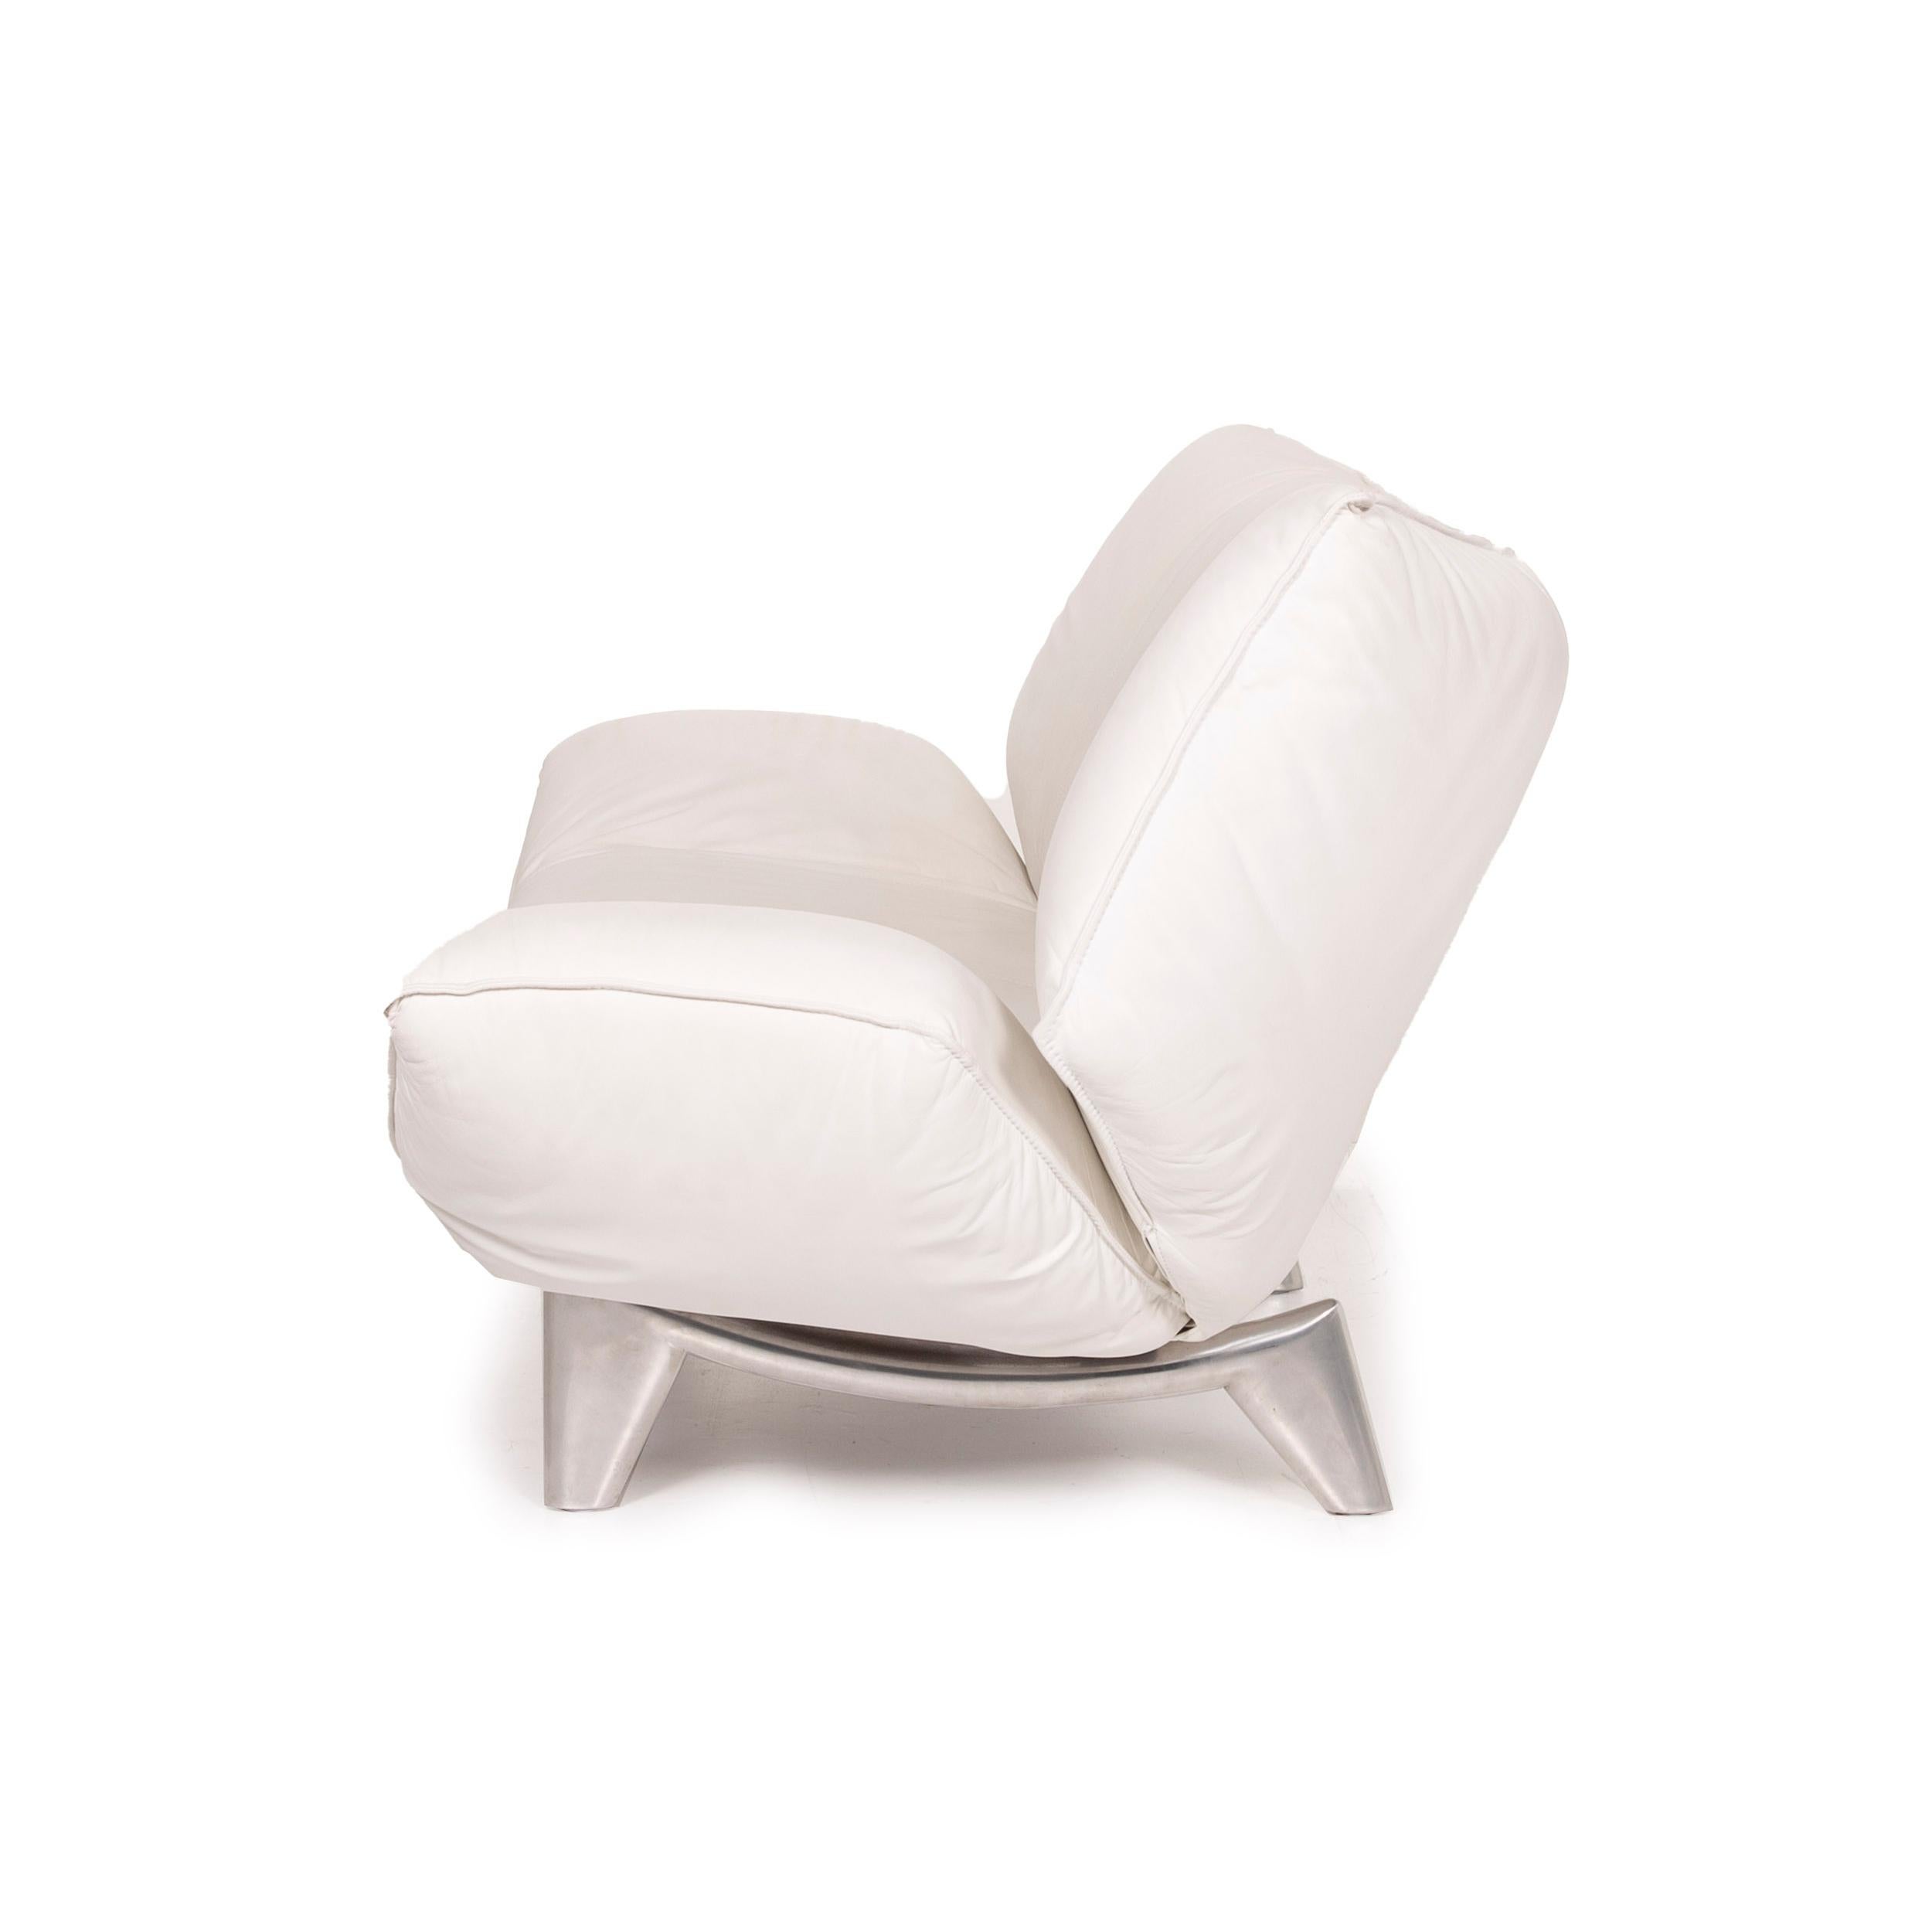 Leolux Tango Leather Sofa White Two-Seater Function 3